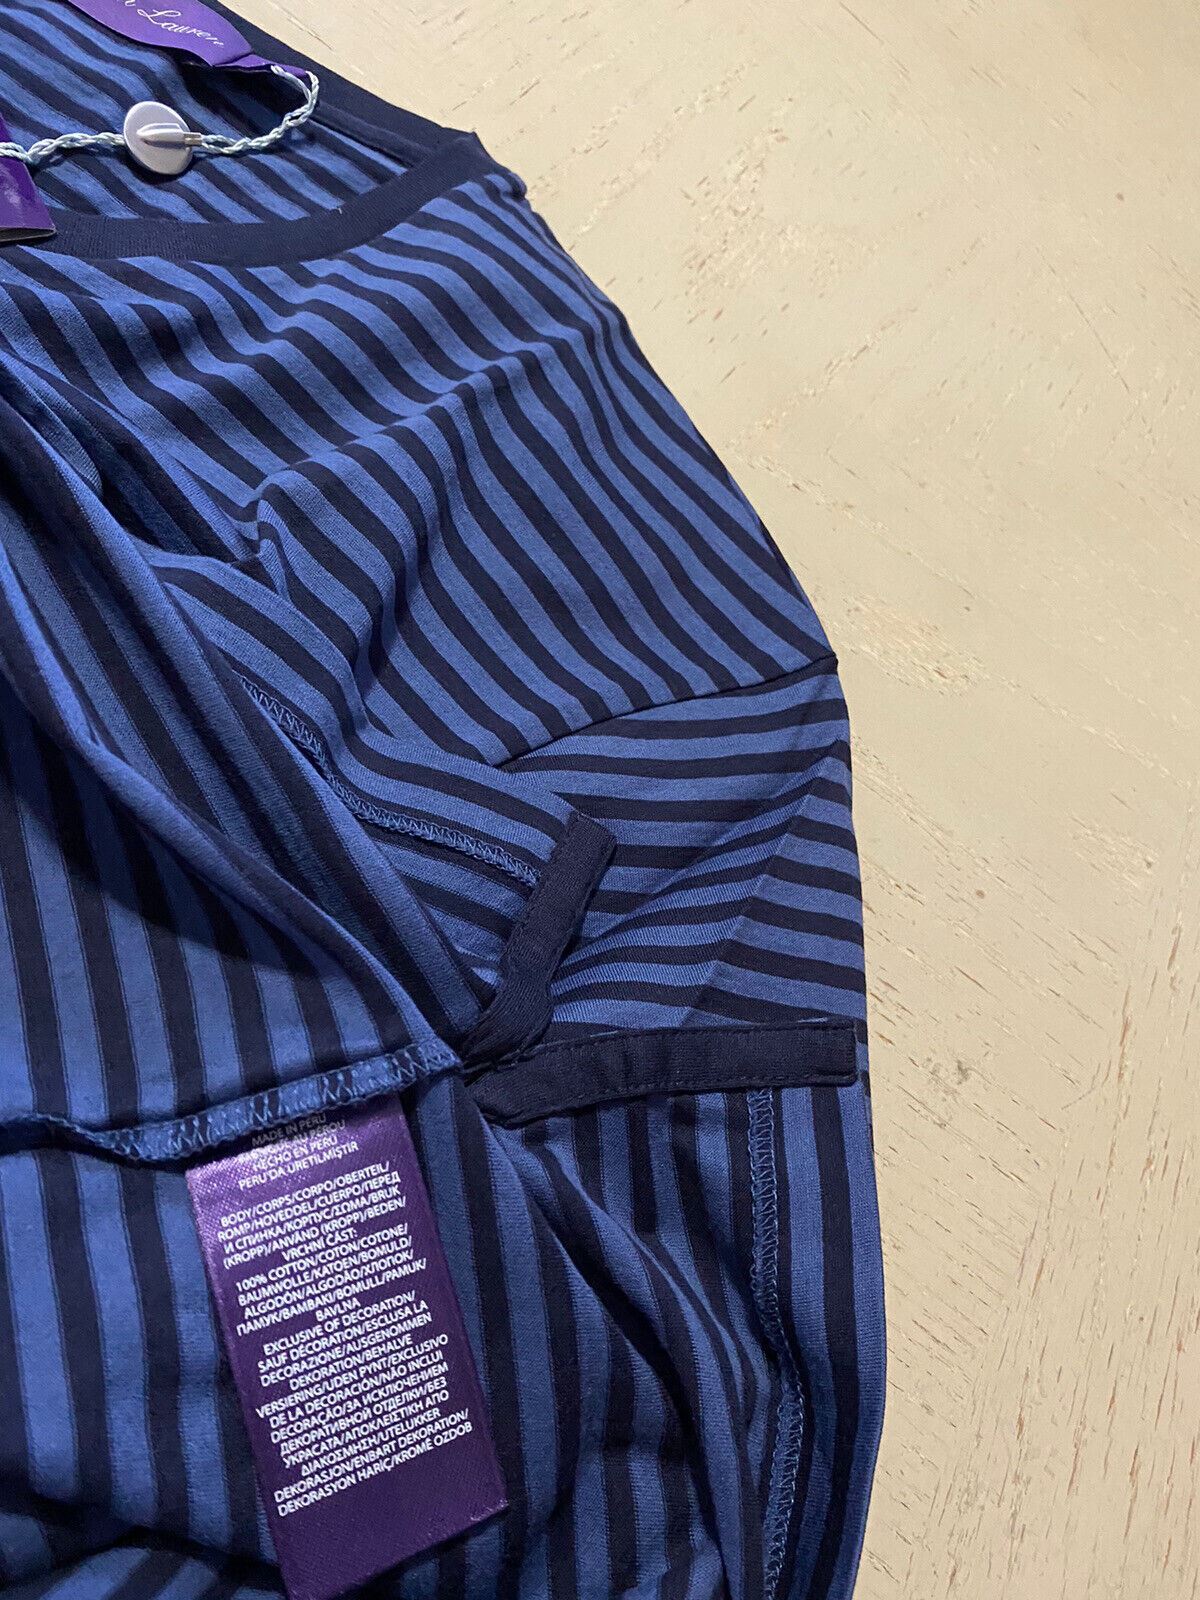 Мужская футболка в полоску с круглым вырезом NWT Ralph Lauren Purple Label, темно-синяя, XL